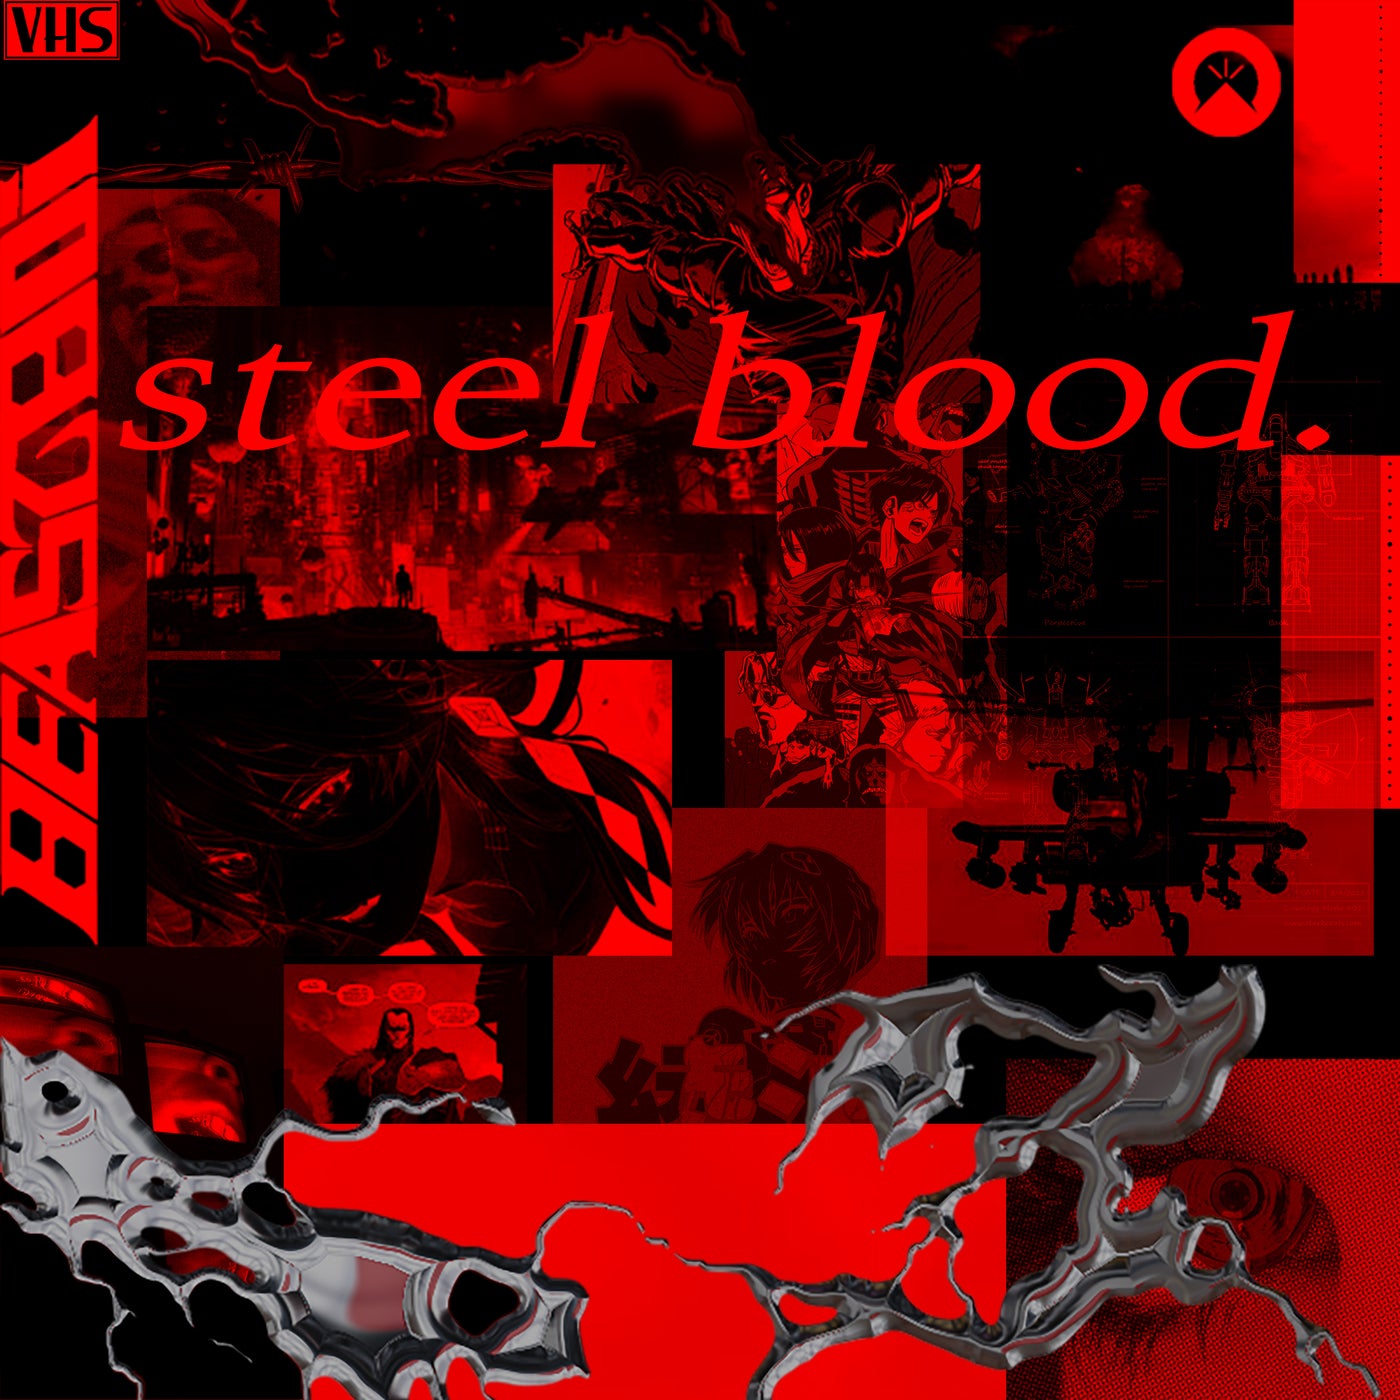 Steel Blood